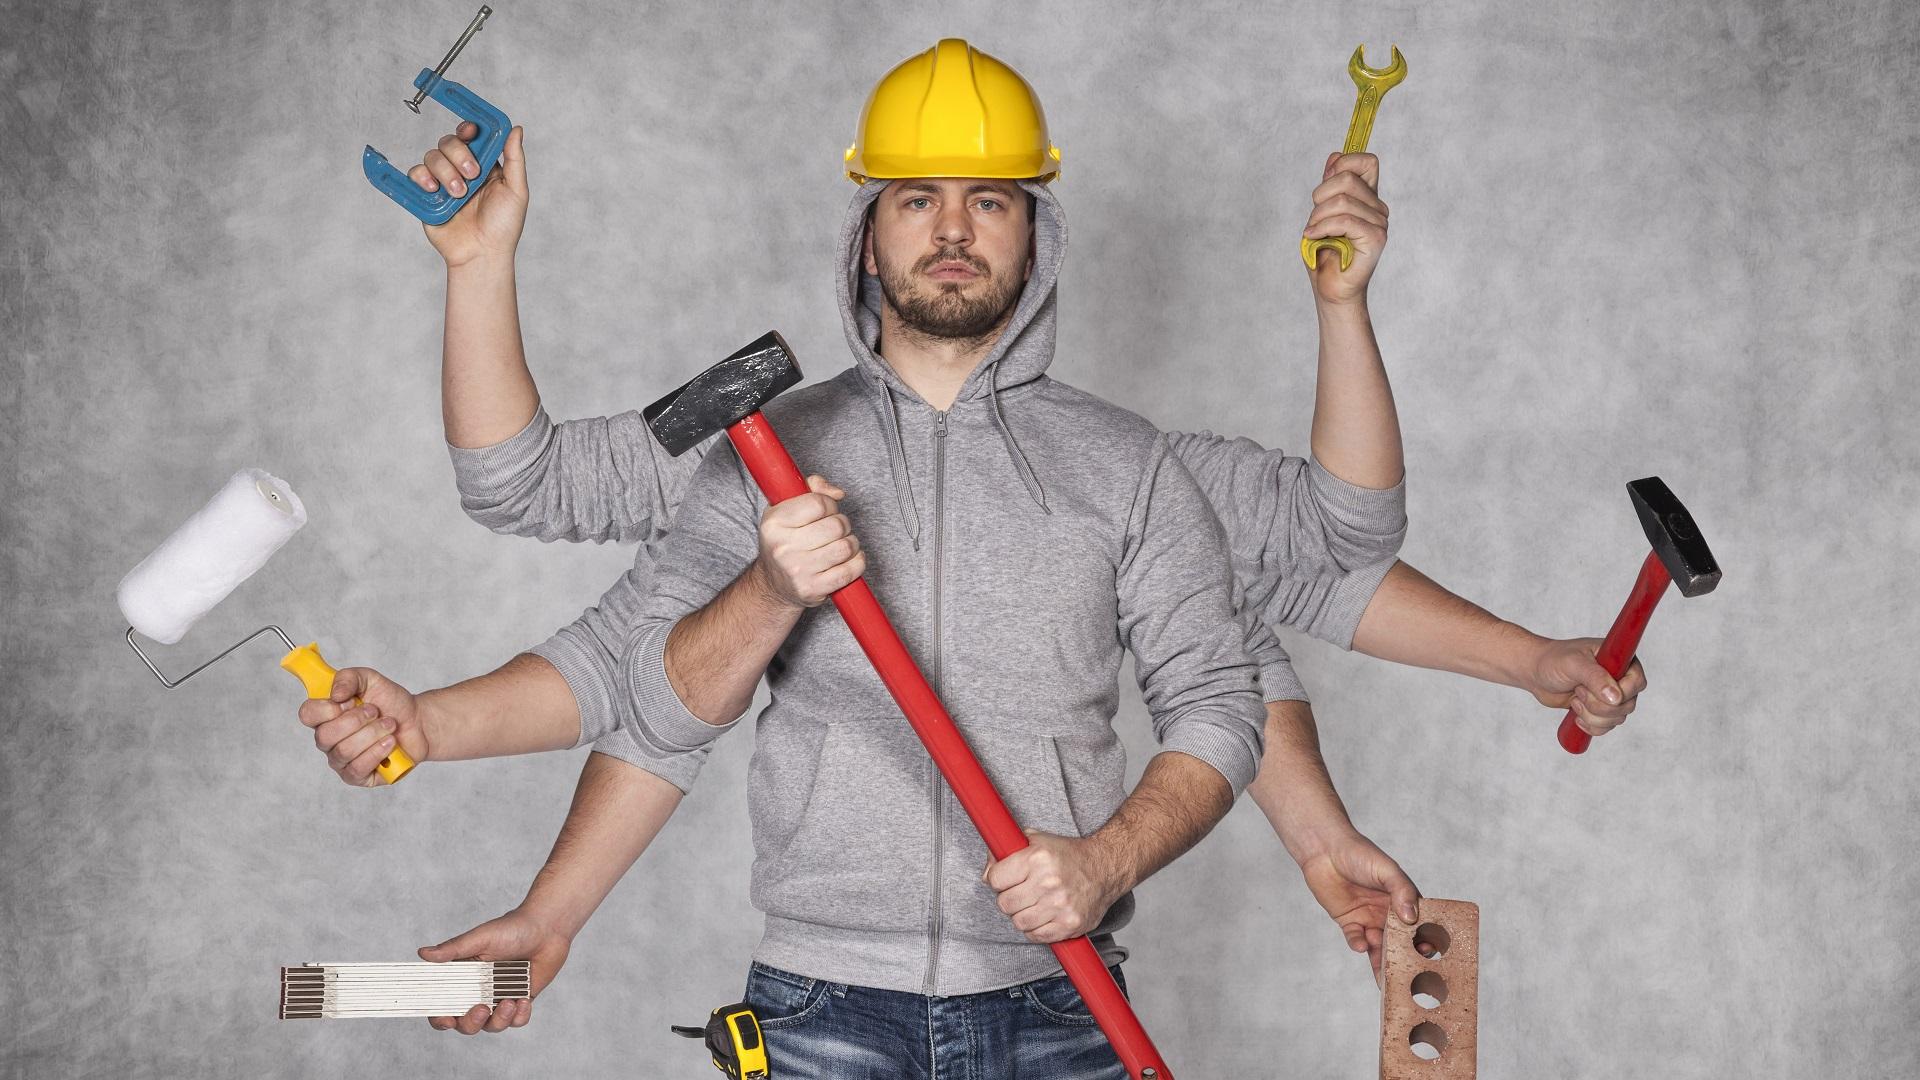 On monia kodin remontteja, joissa kannattaa pyytää kattava tarjous ammattilaisilta. (Kuva: Shutterstock)